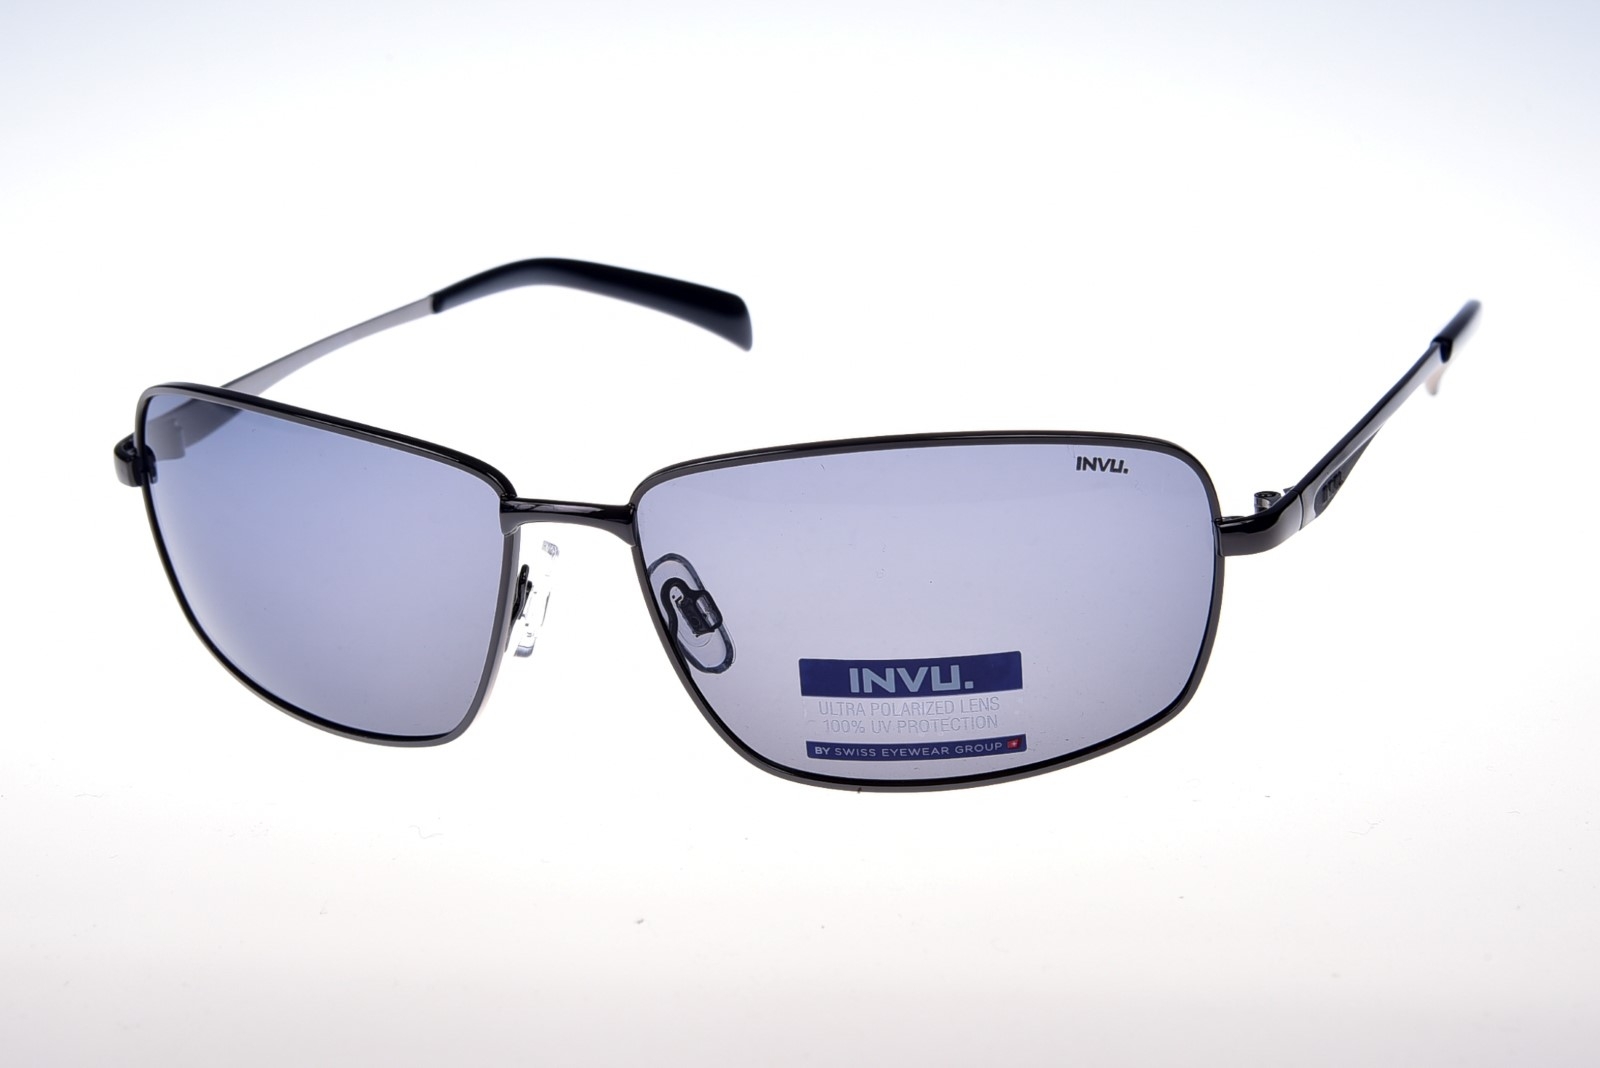 INVU. B1012B - Pánske slnečné okuliare